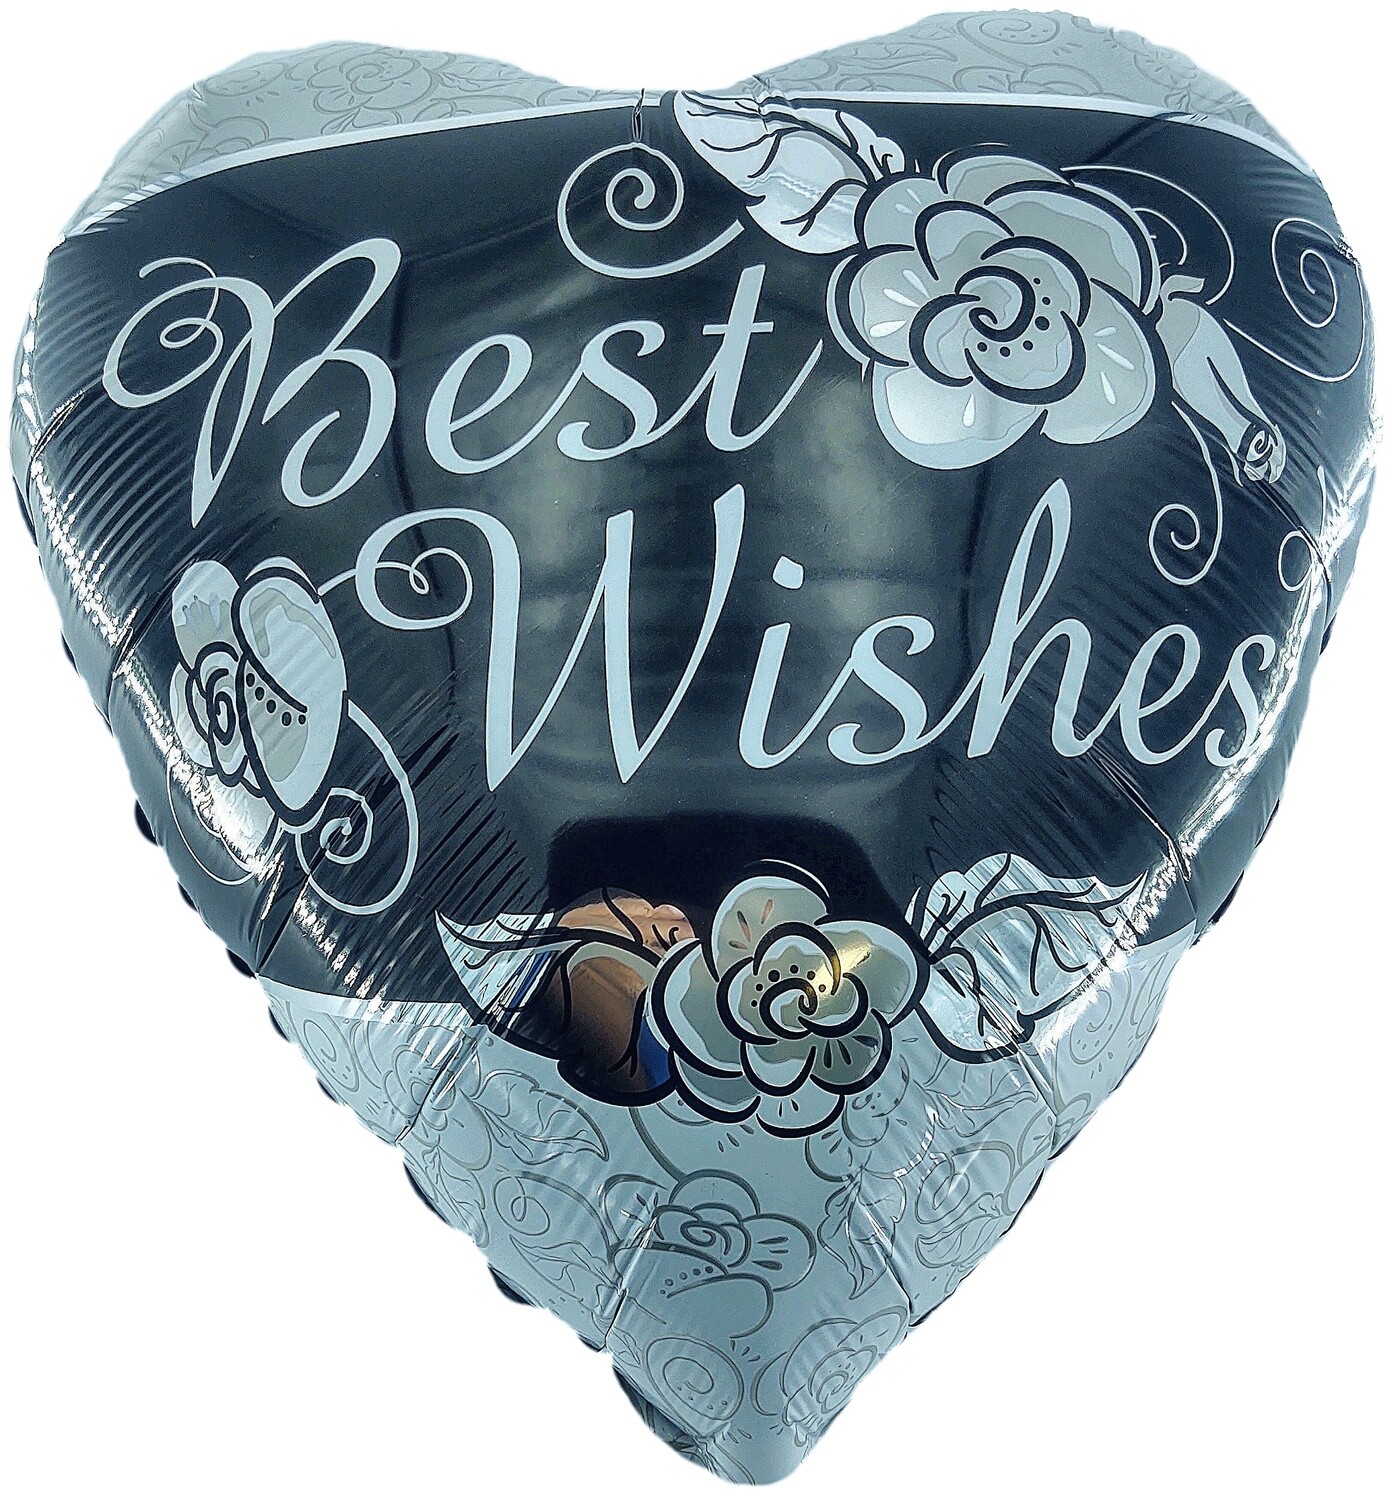 Best Wishes